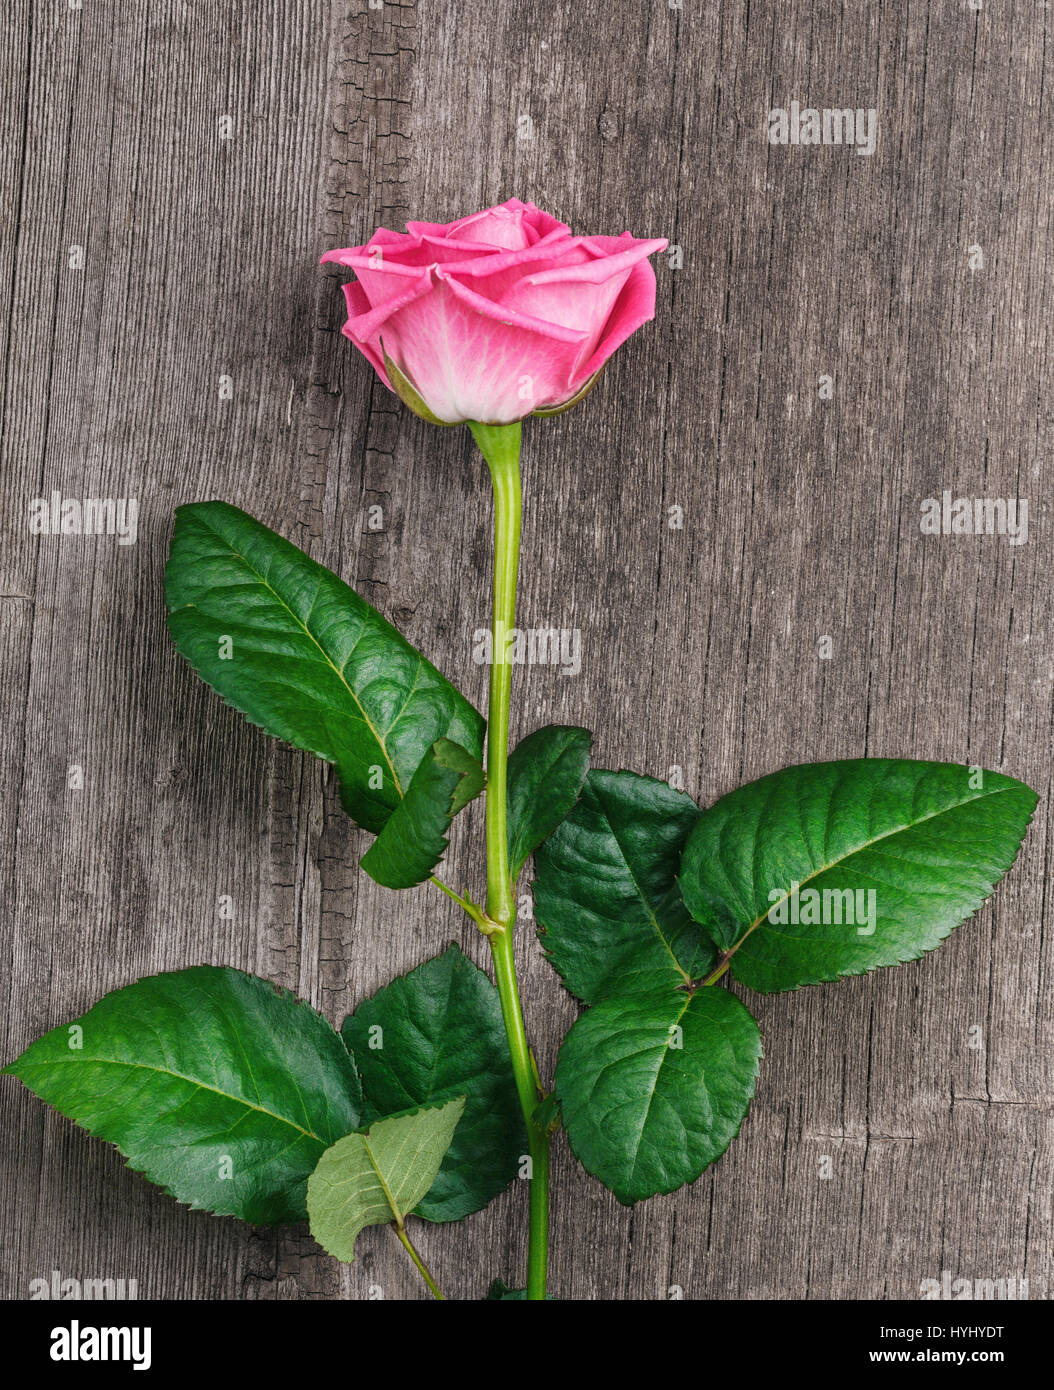 rosa rose Kopf auf dem hölzernen Hintergrund Stockfoto